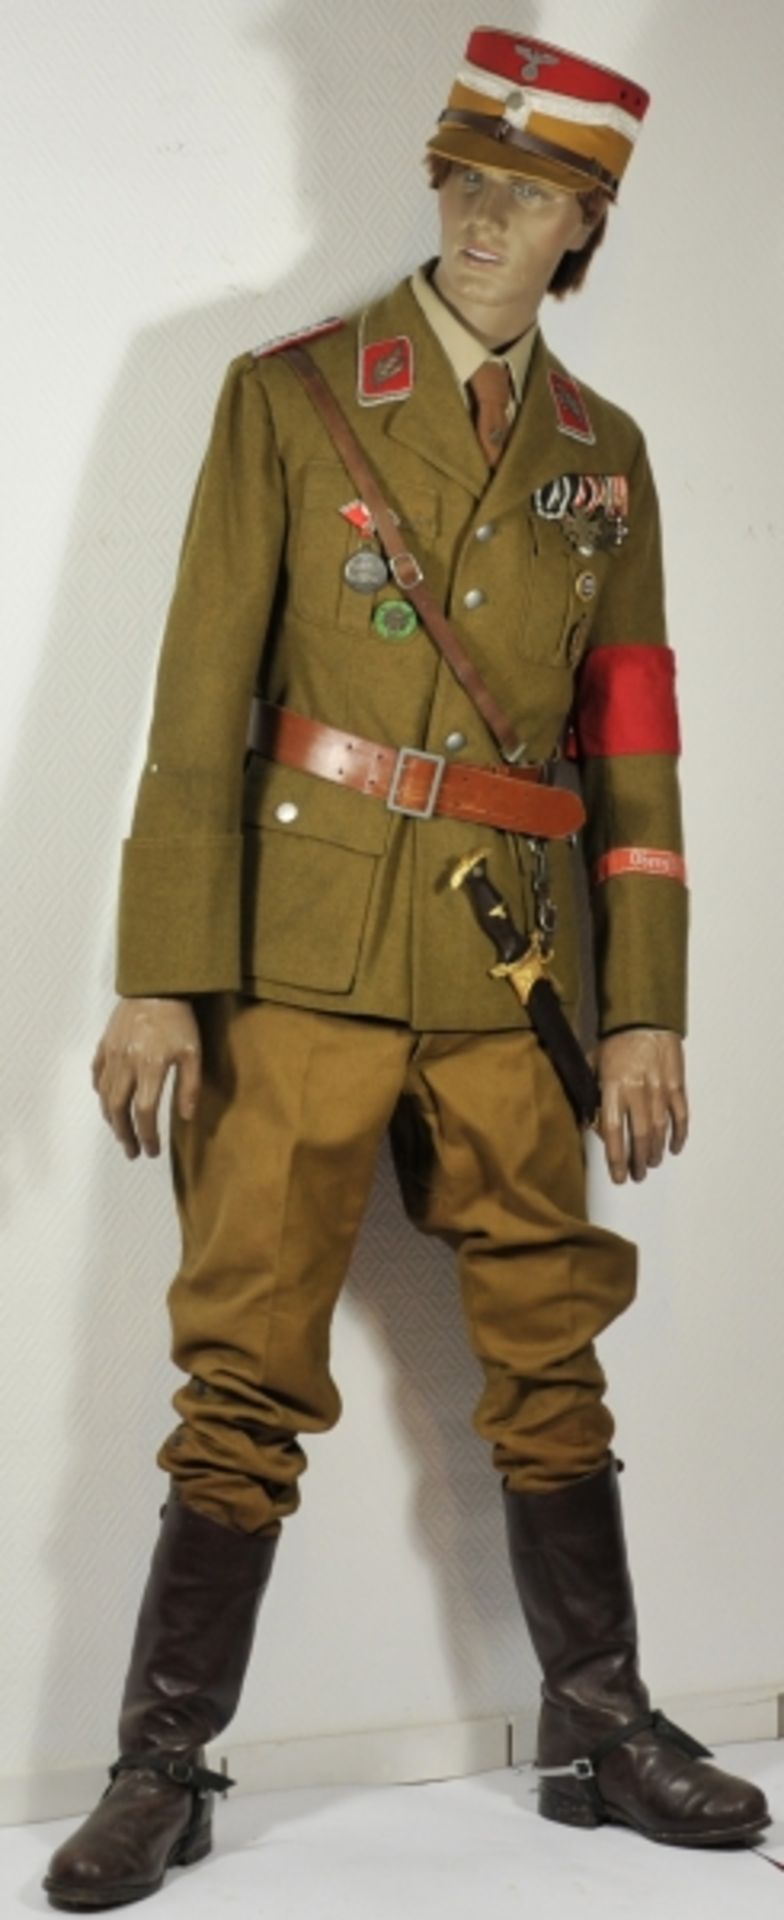 Uniformensemble eines SA-Oberführers im Stab der Obersten SA-Führer.Originale SA-Dienstjacke mit